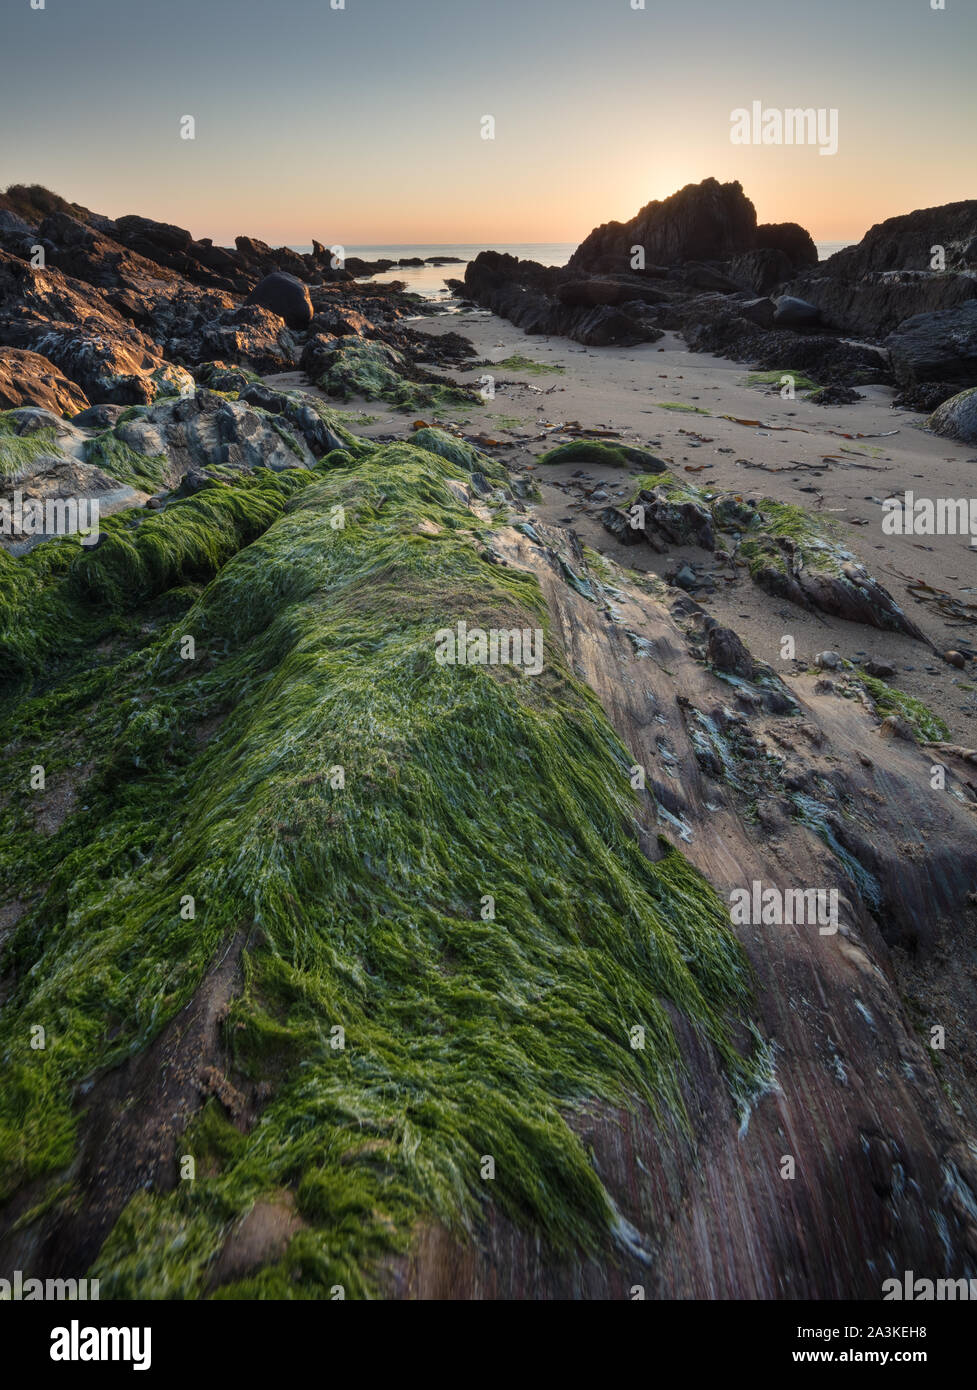 Rochers incrustés d'algues et de lichen sur la plage à la baie Kinnagoe au lever du soleil, péninsule d'Inishowen, Co Donegal, Irlande Banque D'Images